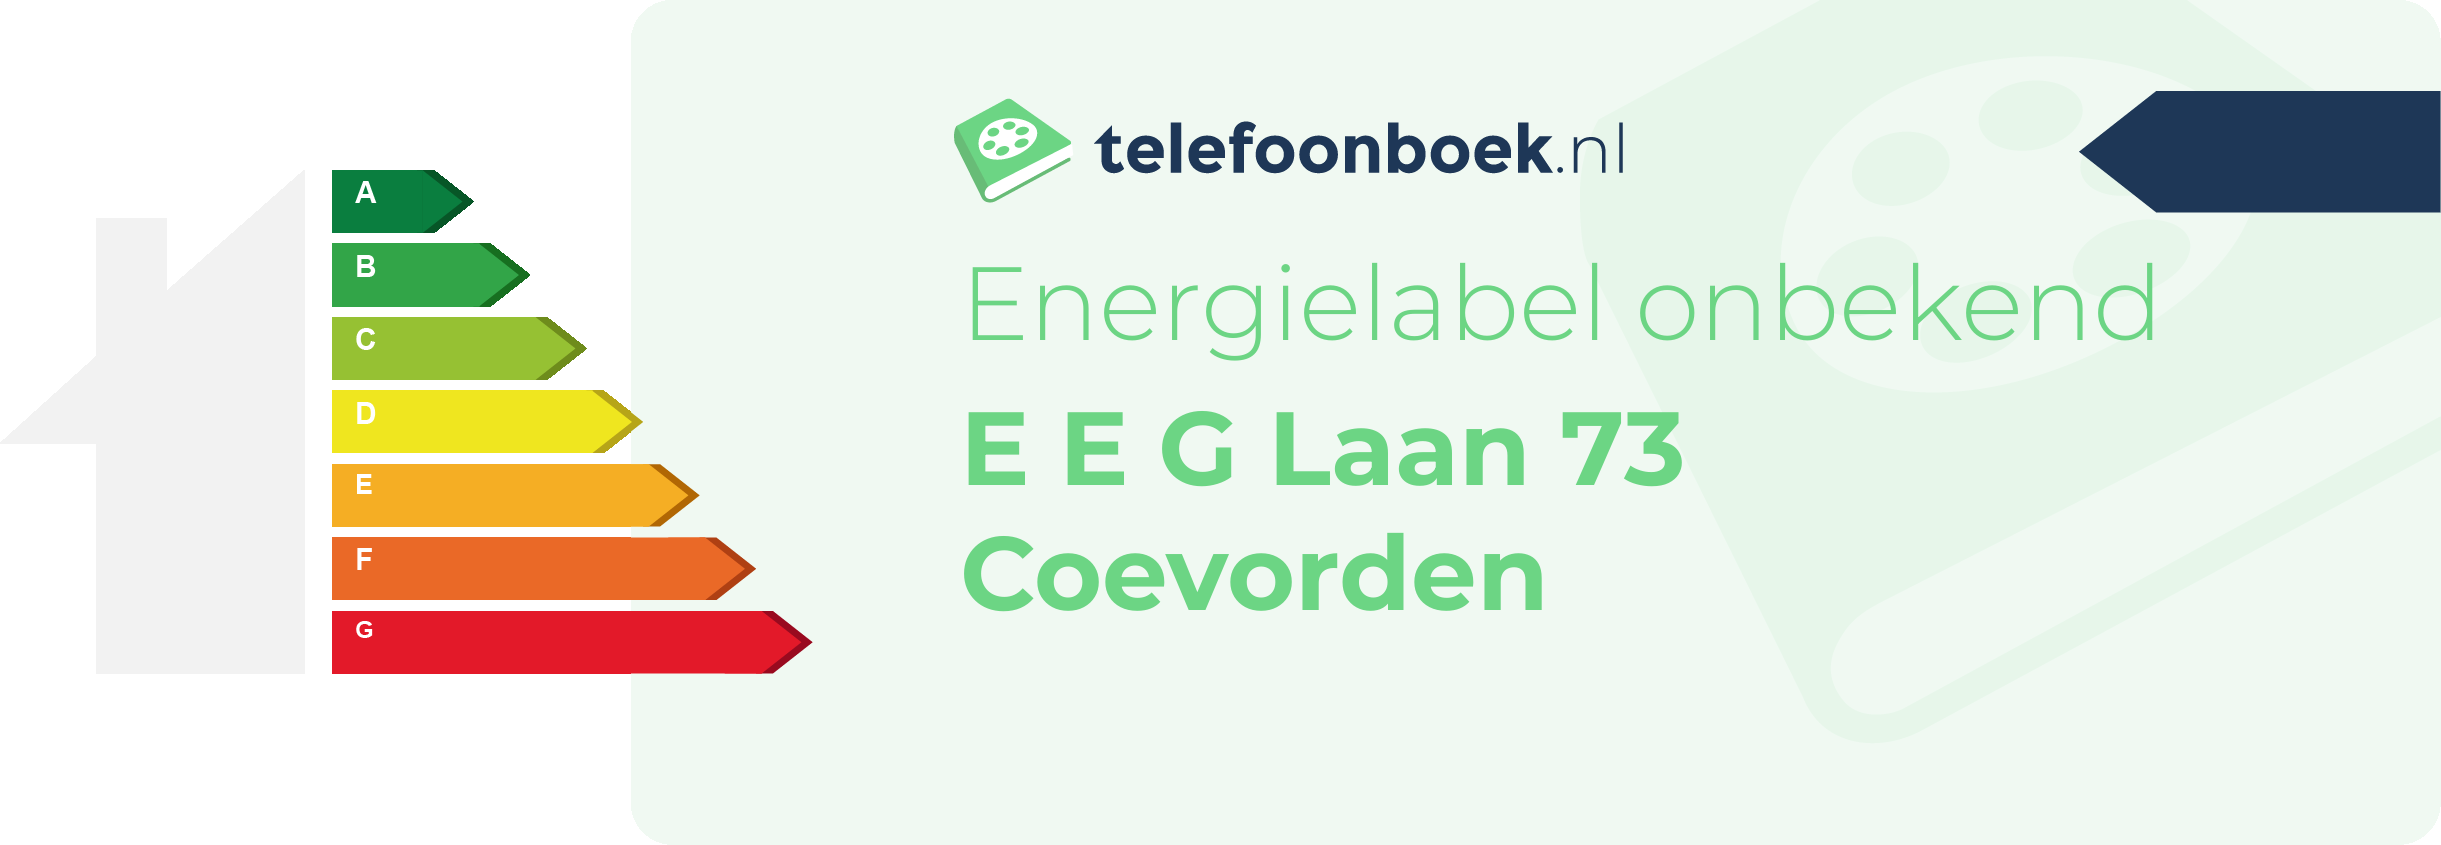 Energielabel E E G Laan 73 Coevorden